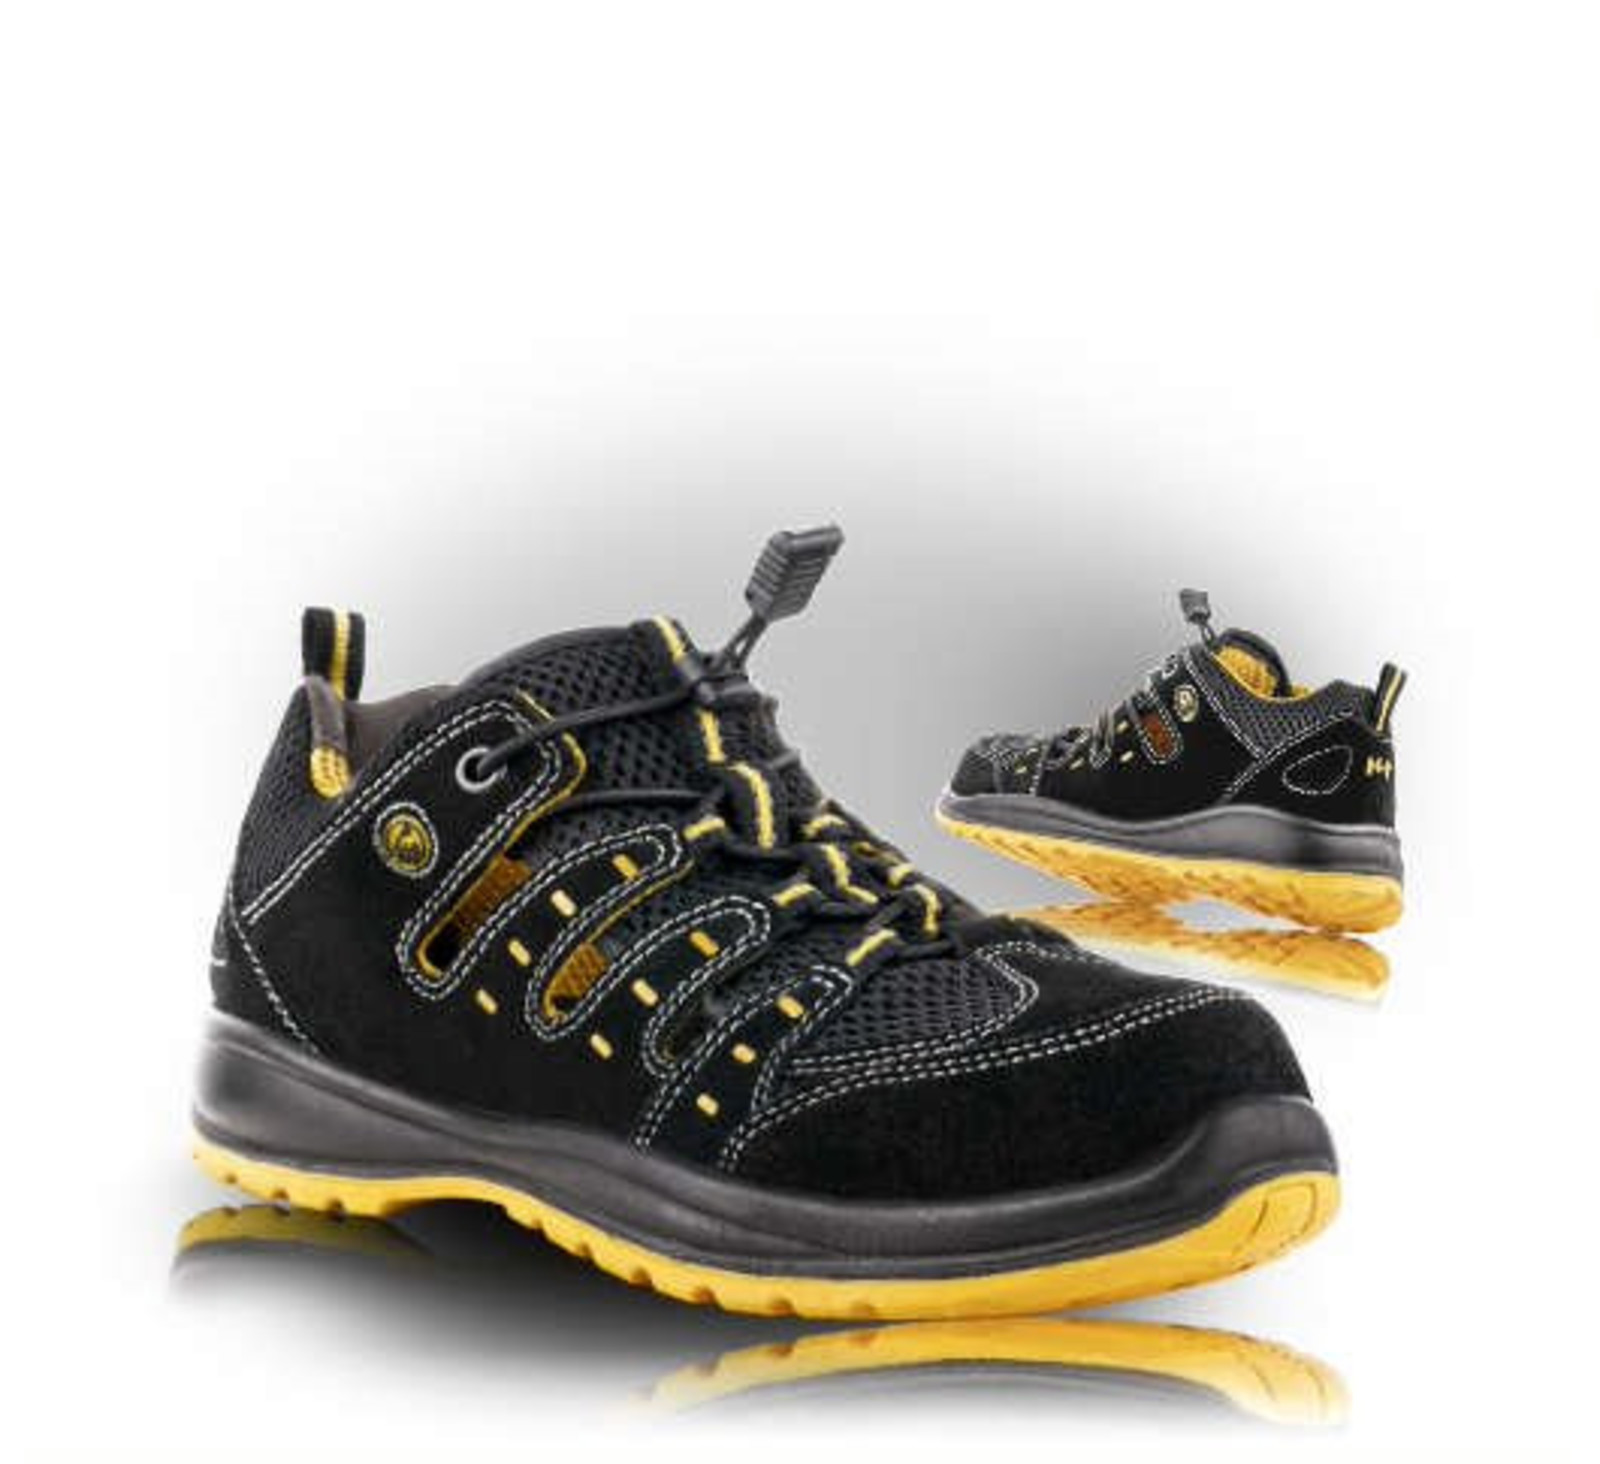 Bezpečnostné sandále Memphis S1 ESD - veľkosť: 36, farba: čierna/žltá